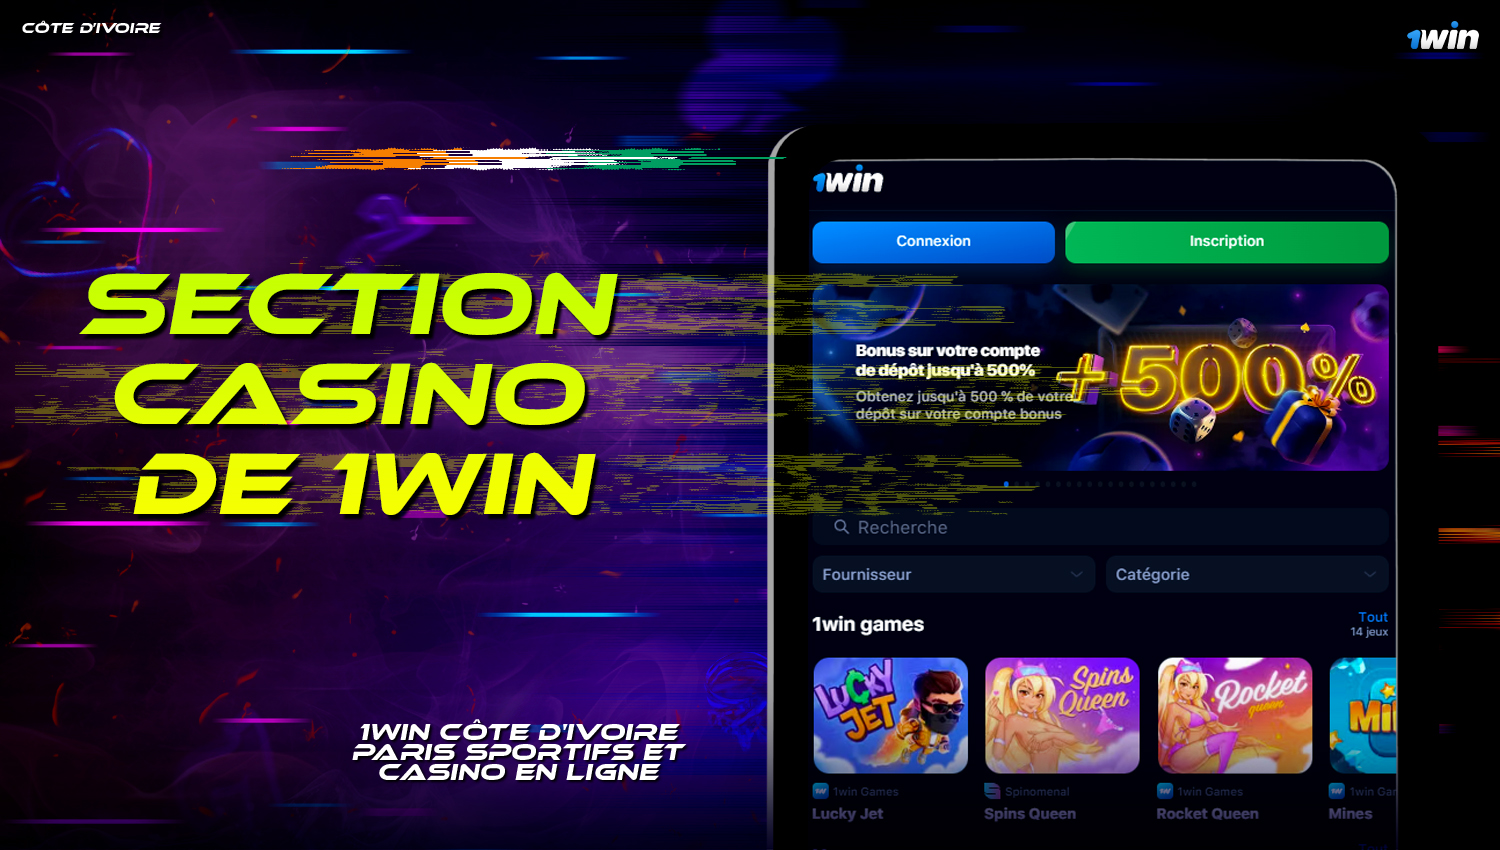 Description de la section casino en ligne sur le site 1Win  